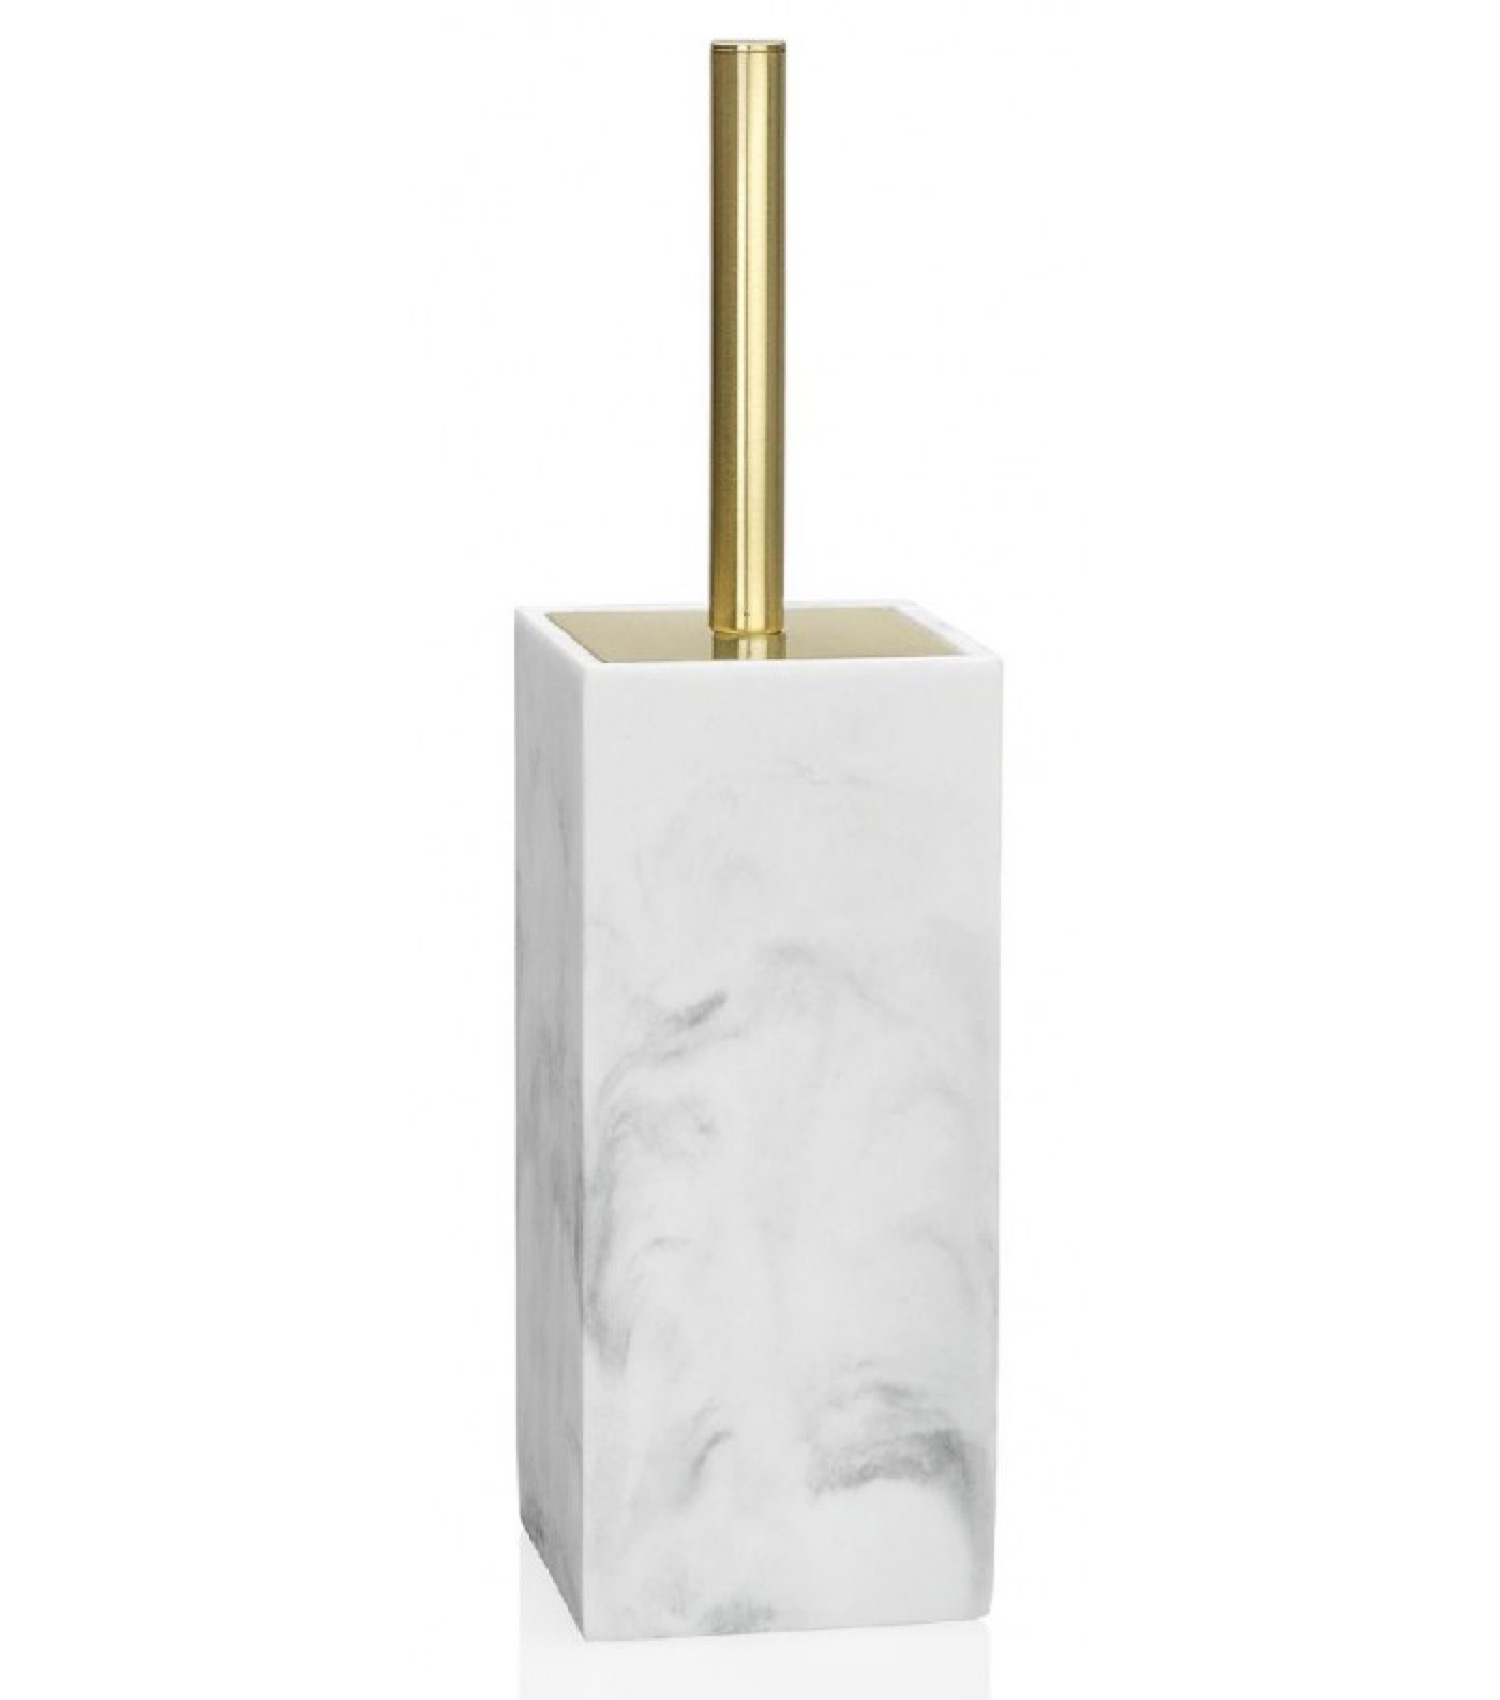 Brosse WC en résine effet marbre blanc et métal doré